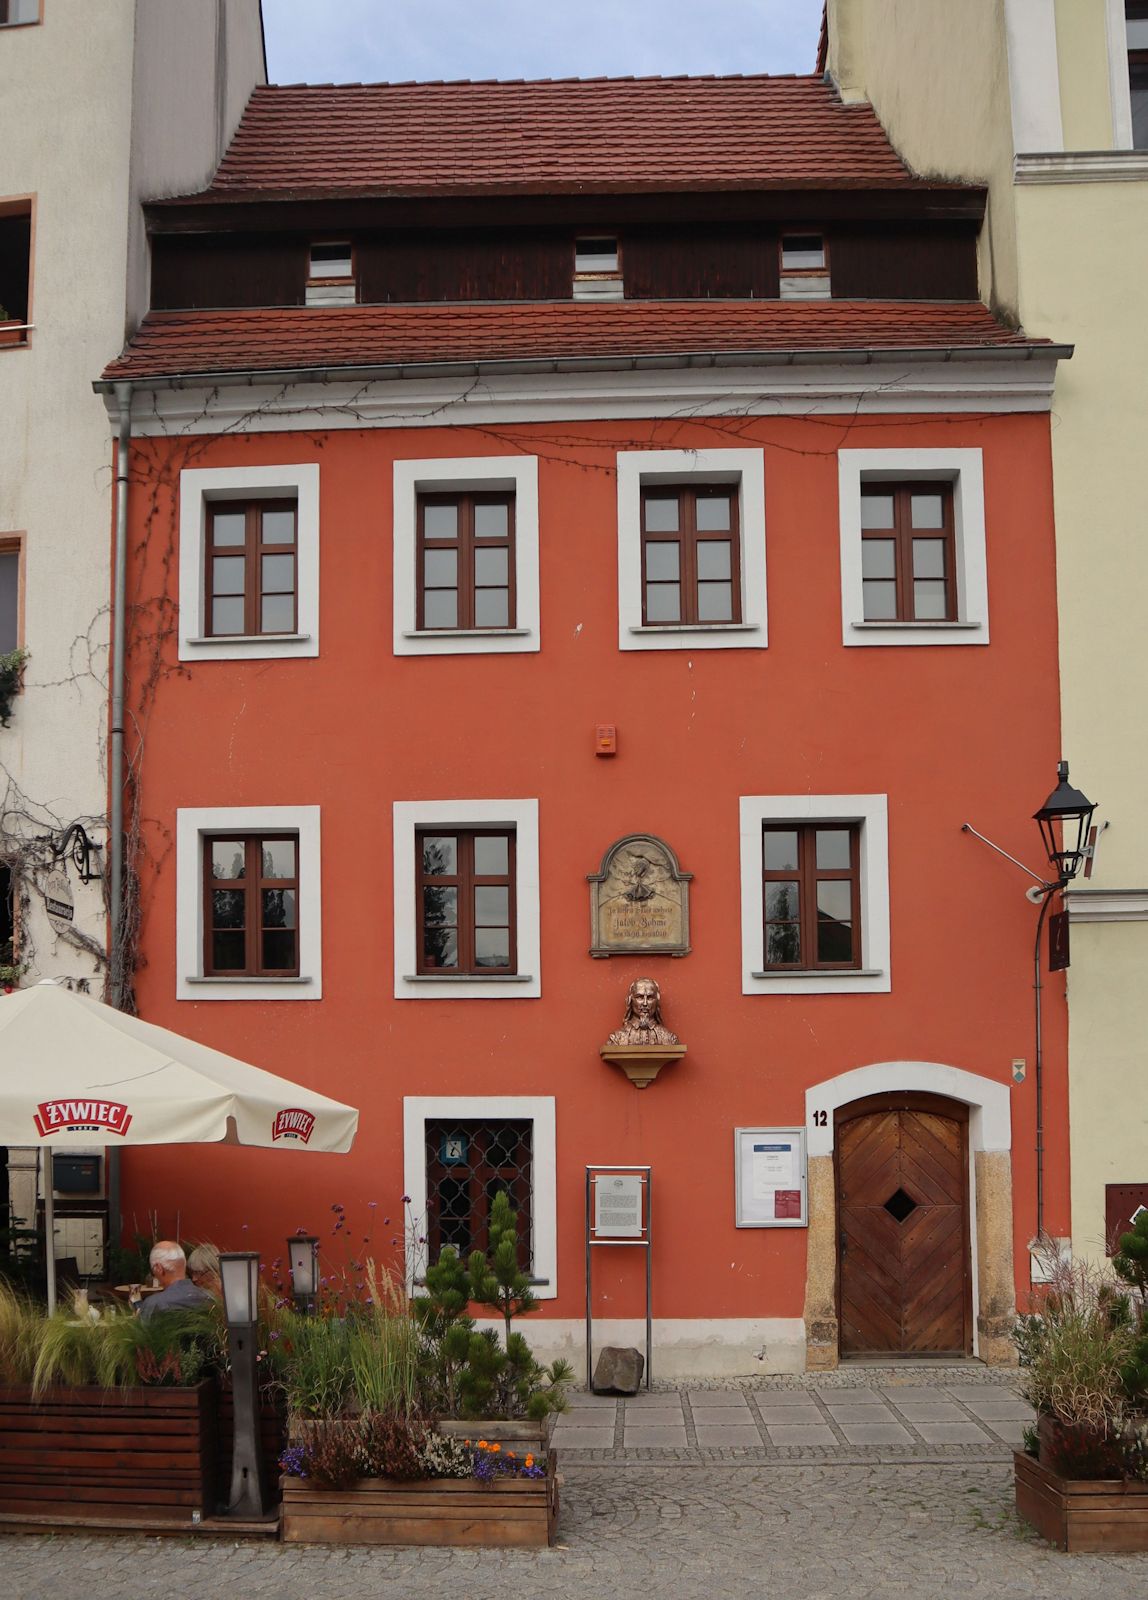 Böhmes Wohnhaus in Görlitz - heute im polnischen Zgorzelec - 1599 bis 1610 mit Büste und Inschrift